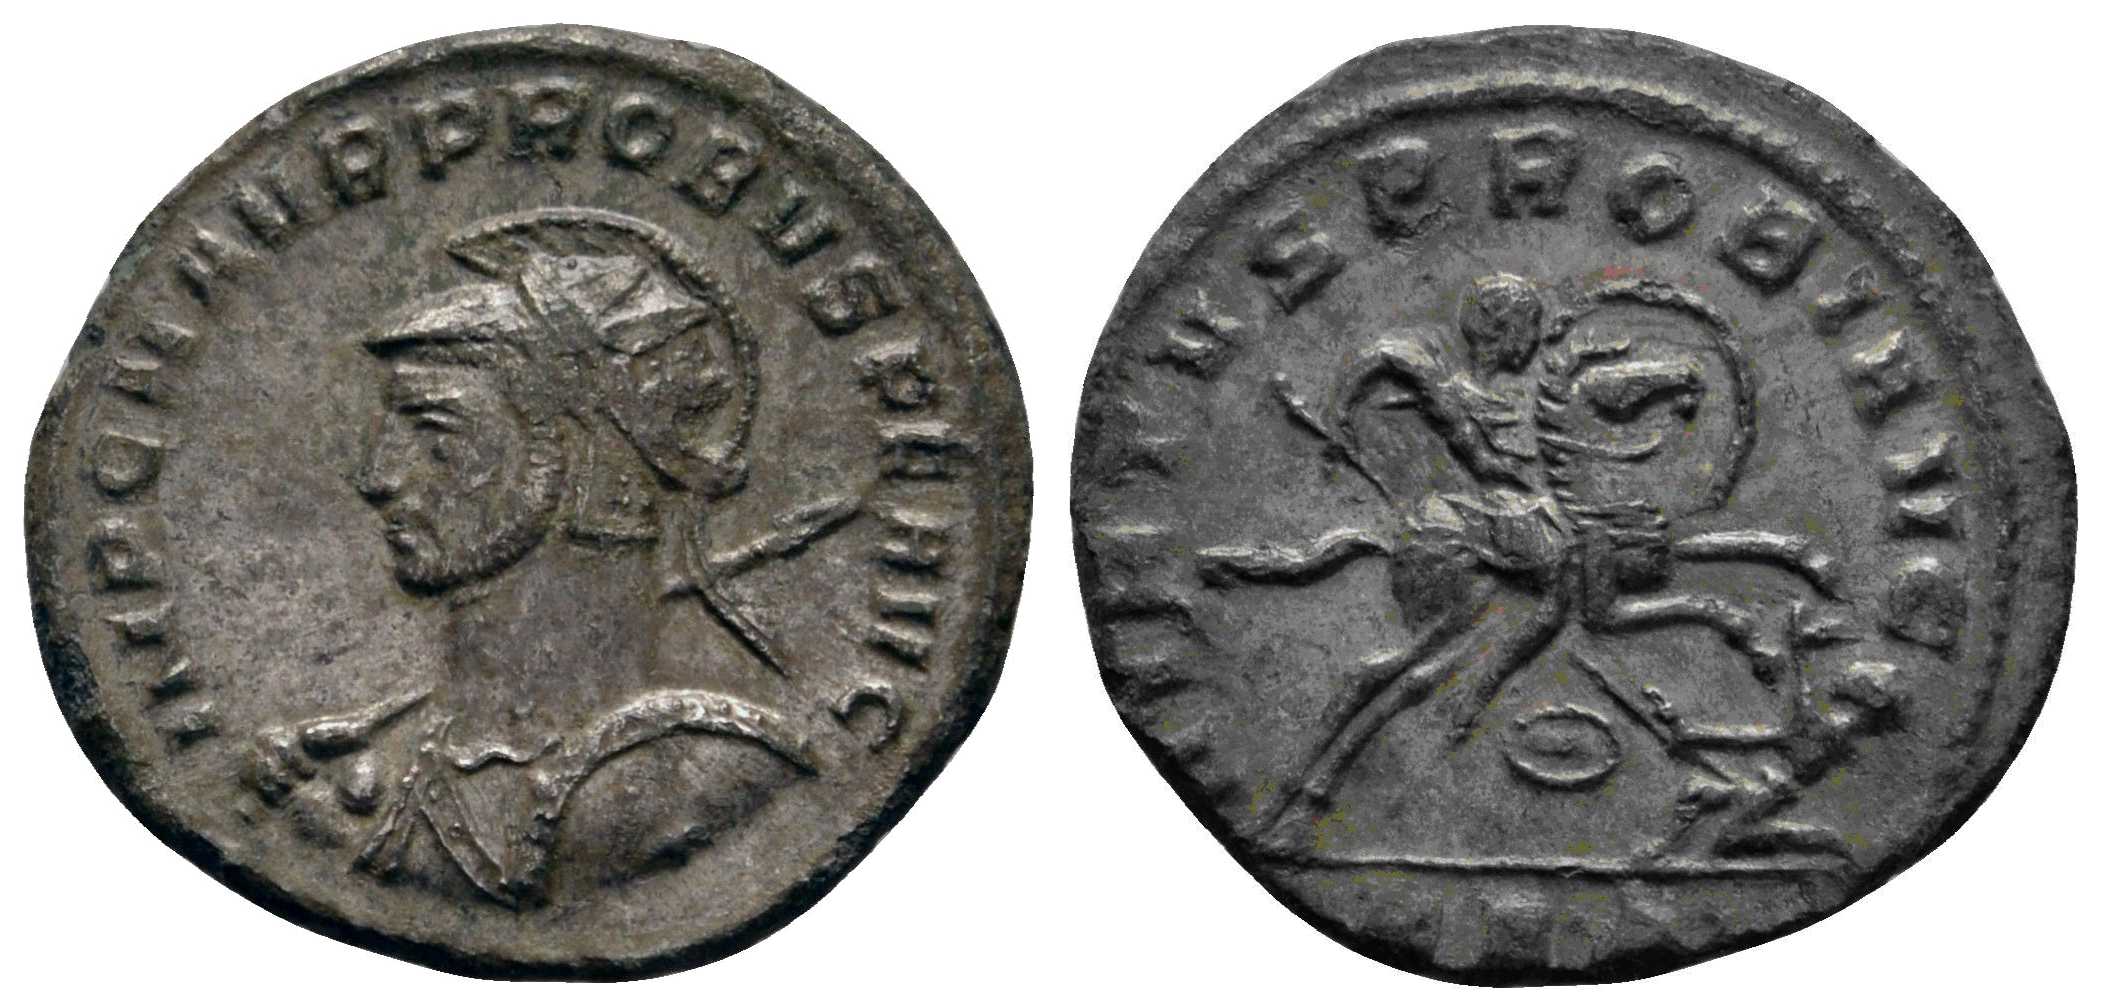 6059 Serdica Thracia Probus Antoninianus BL